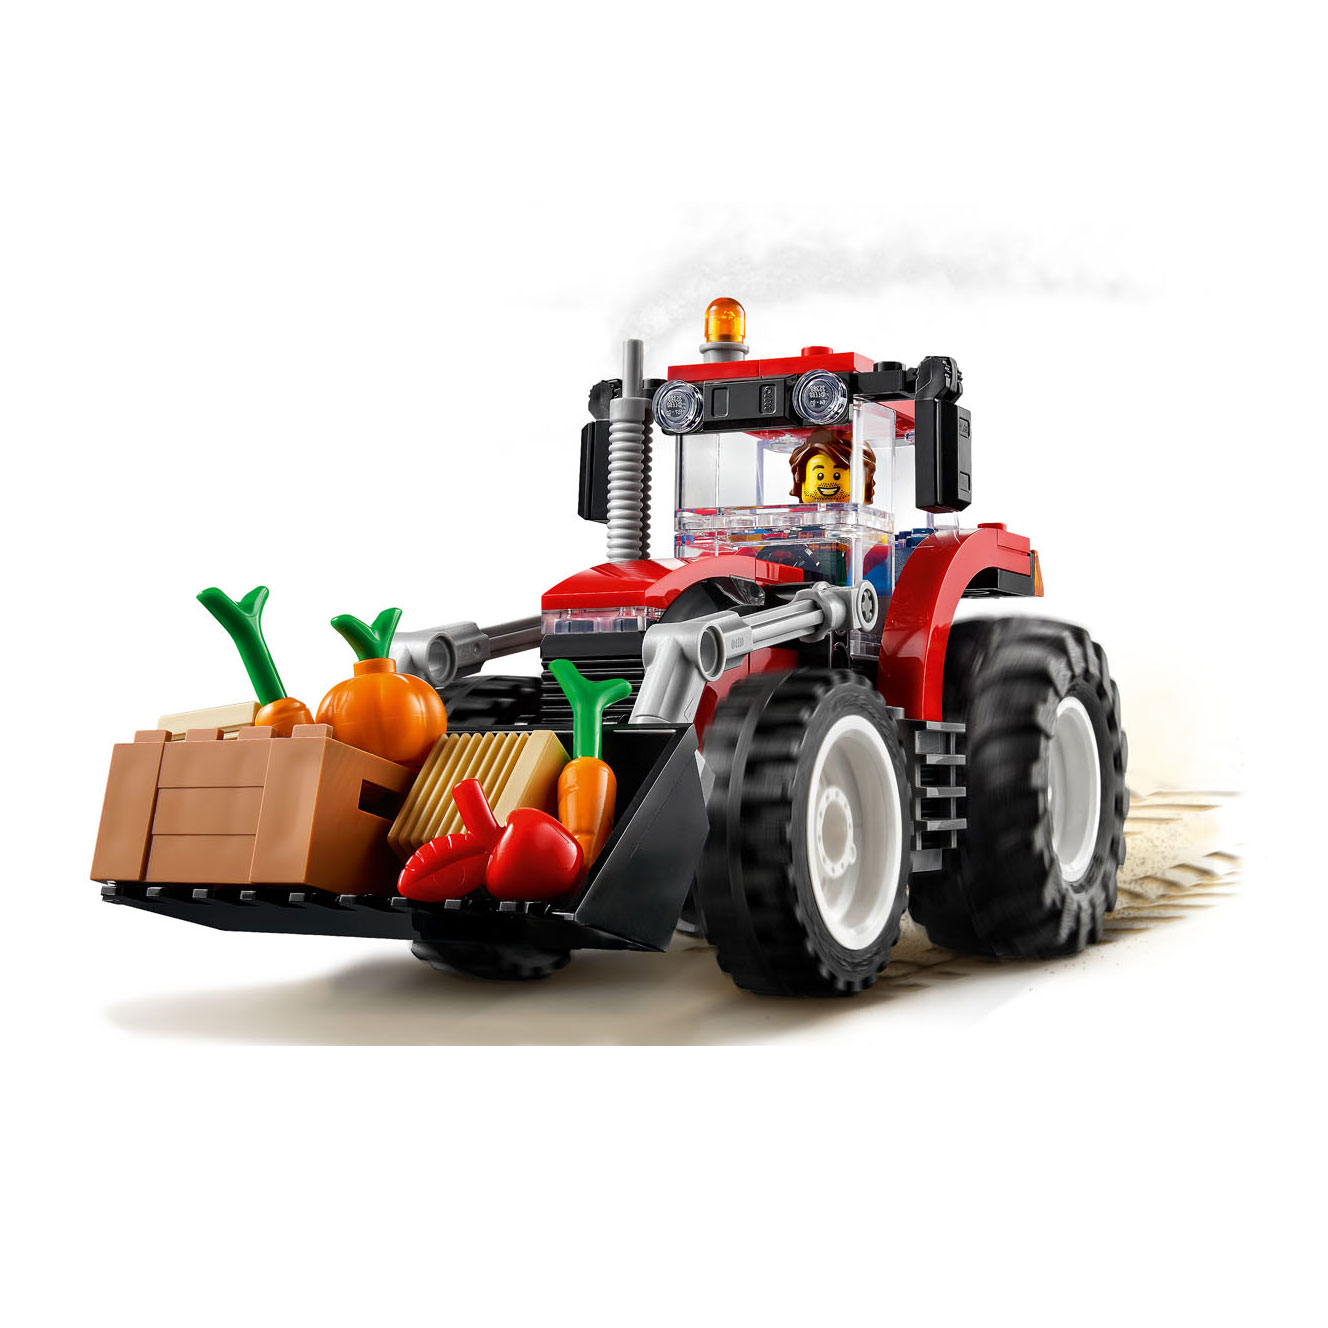 LEGO City 60287 Le tracteur